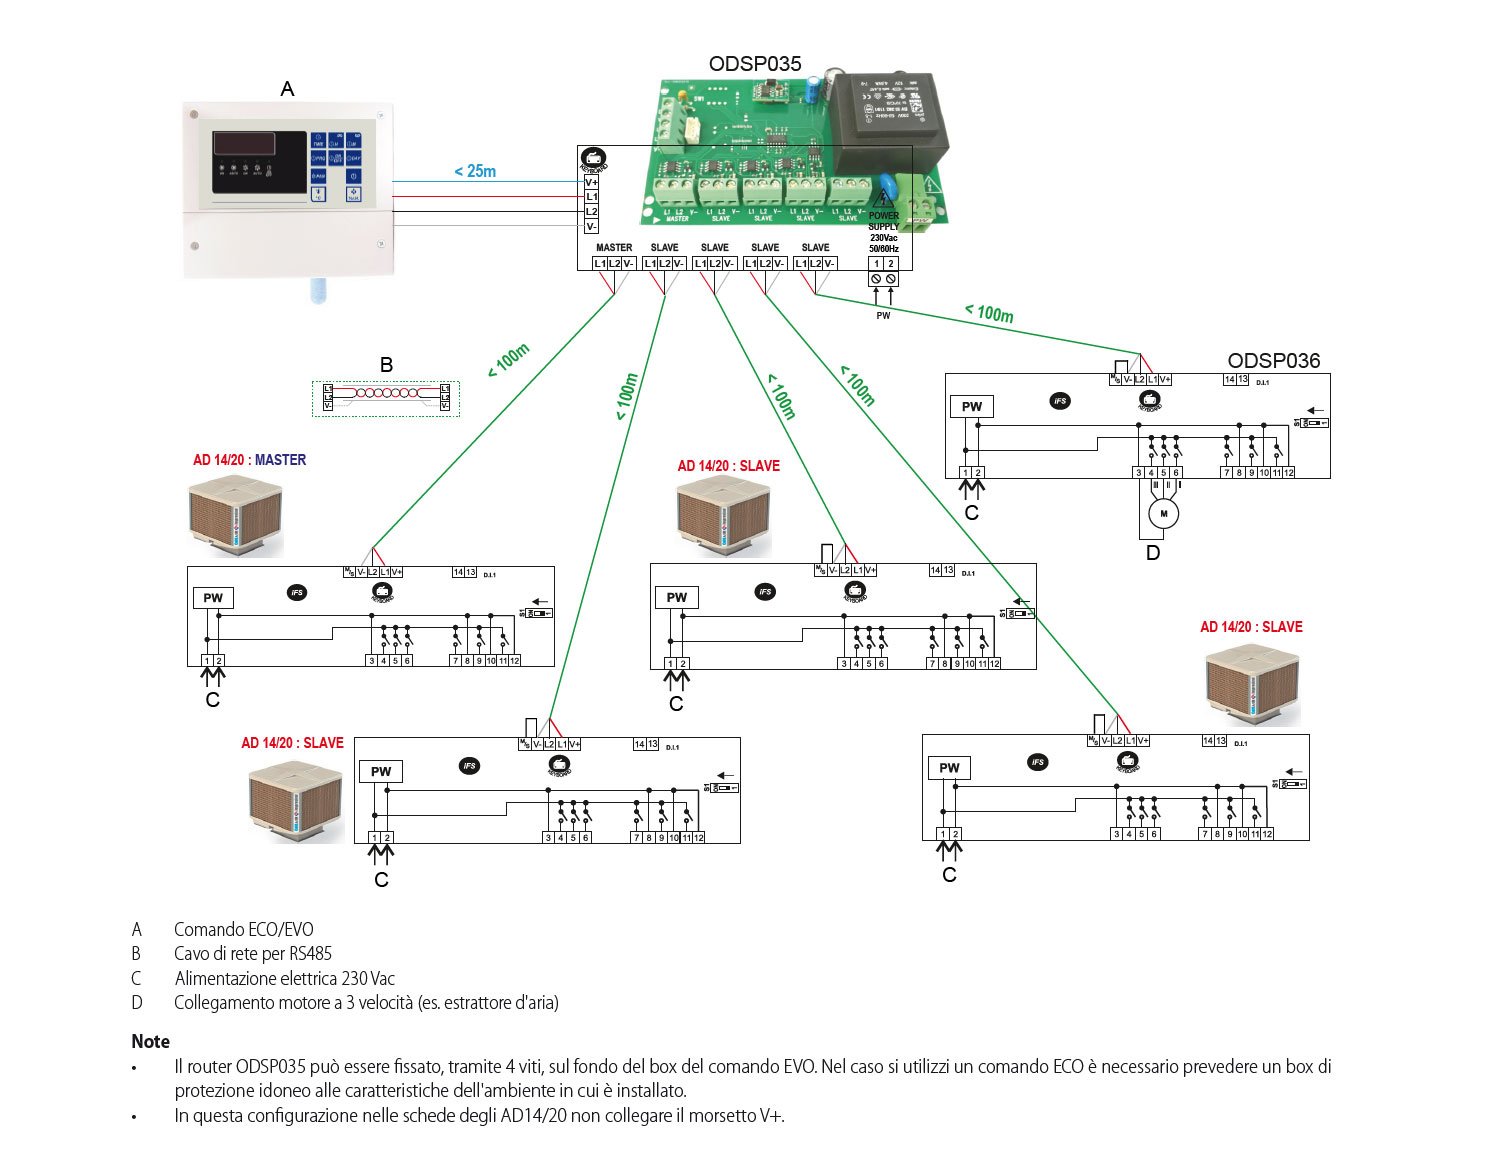 ROBUR_comandi_controllo-centralizzato-tramite-router